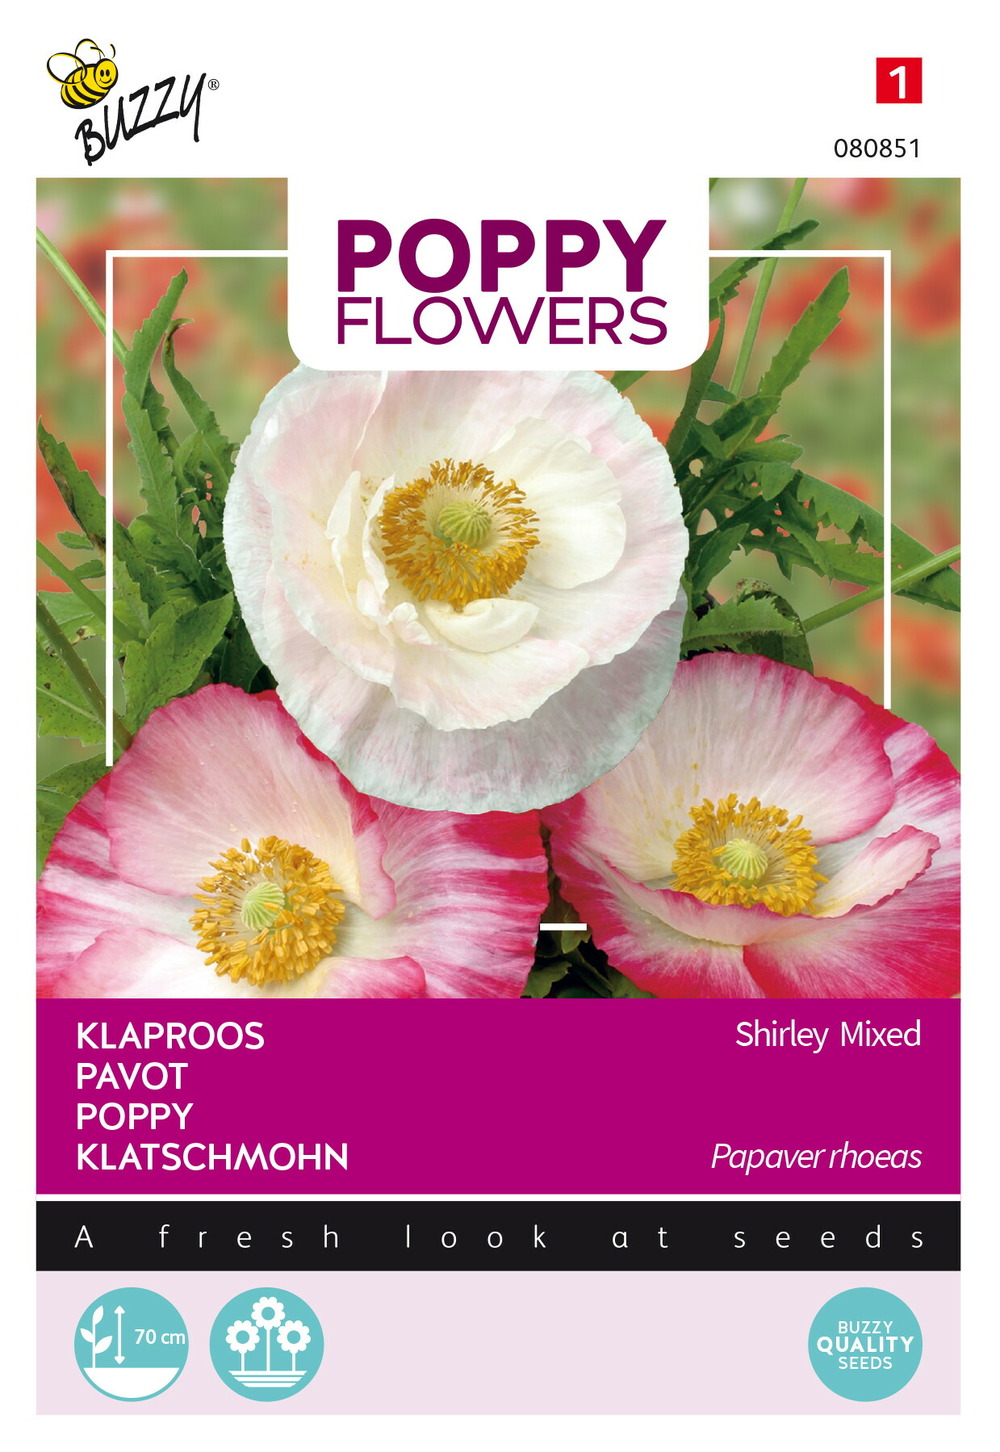 Buzzy poppy flowers coquelicot en mélange - ca. 1 gr (livraison gratuite)